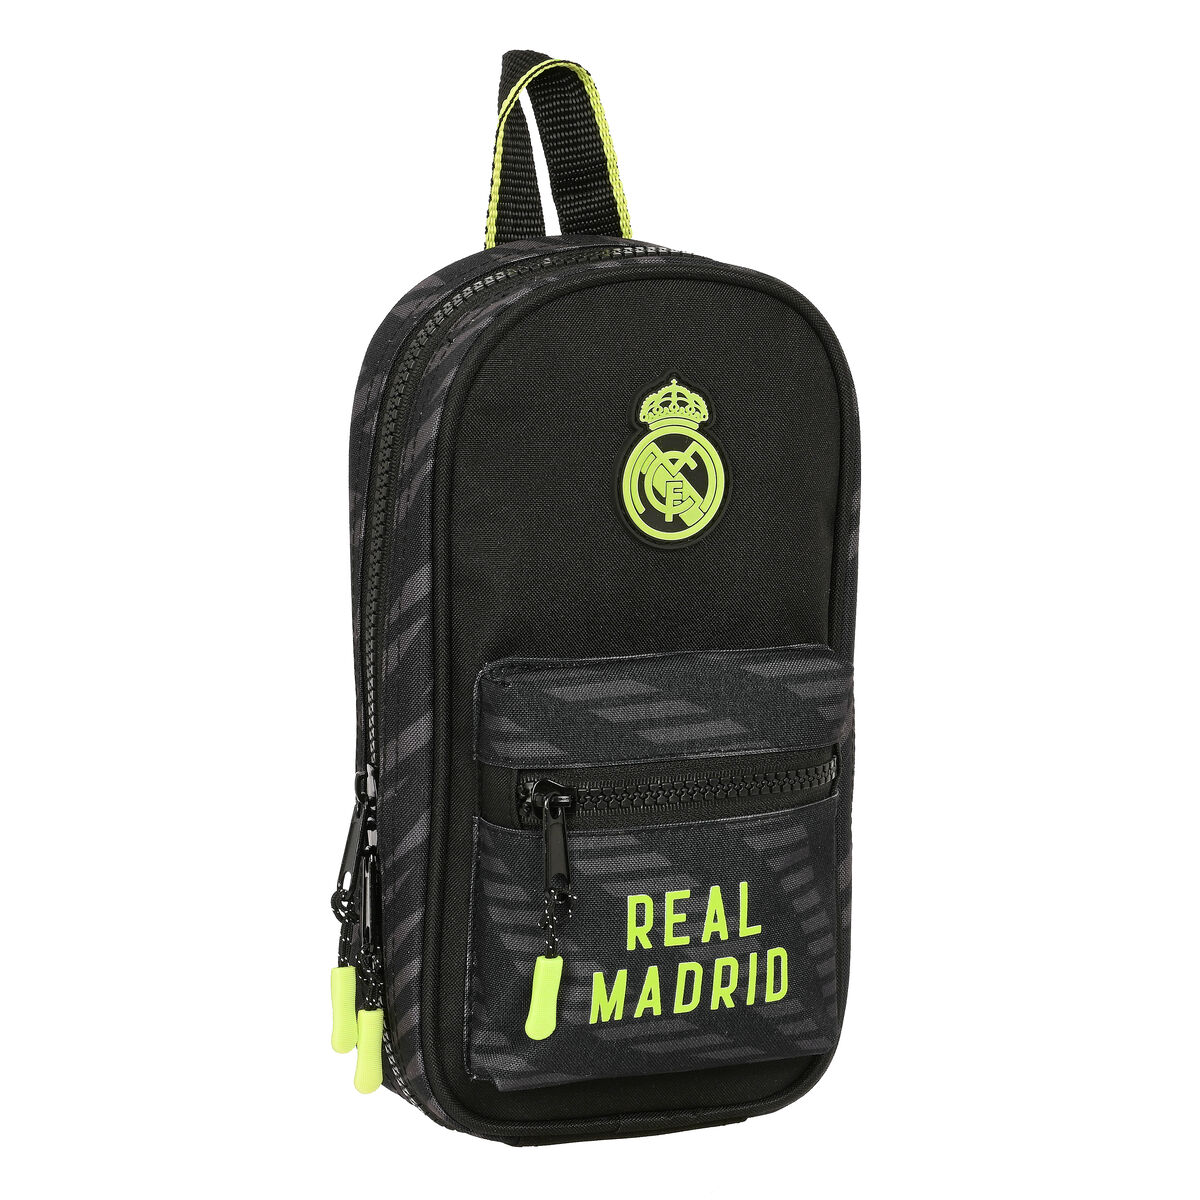 Plumier sac à dos Real Madrid C.F. Noir (12 x 23 x 5 cm)